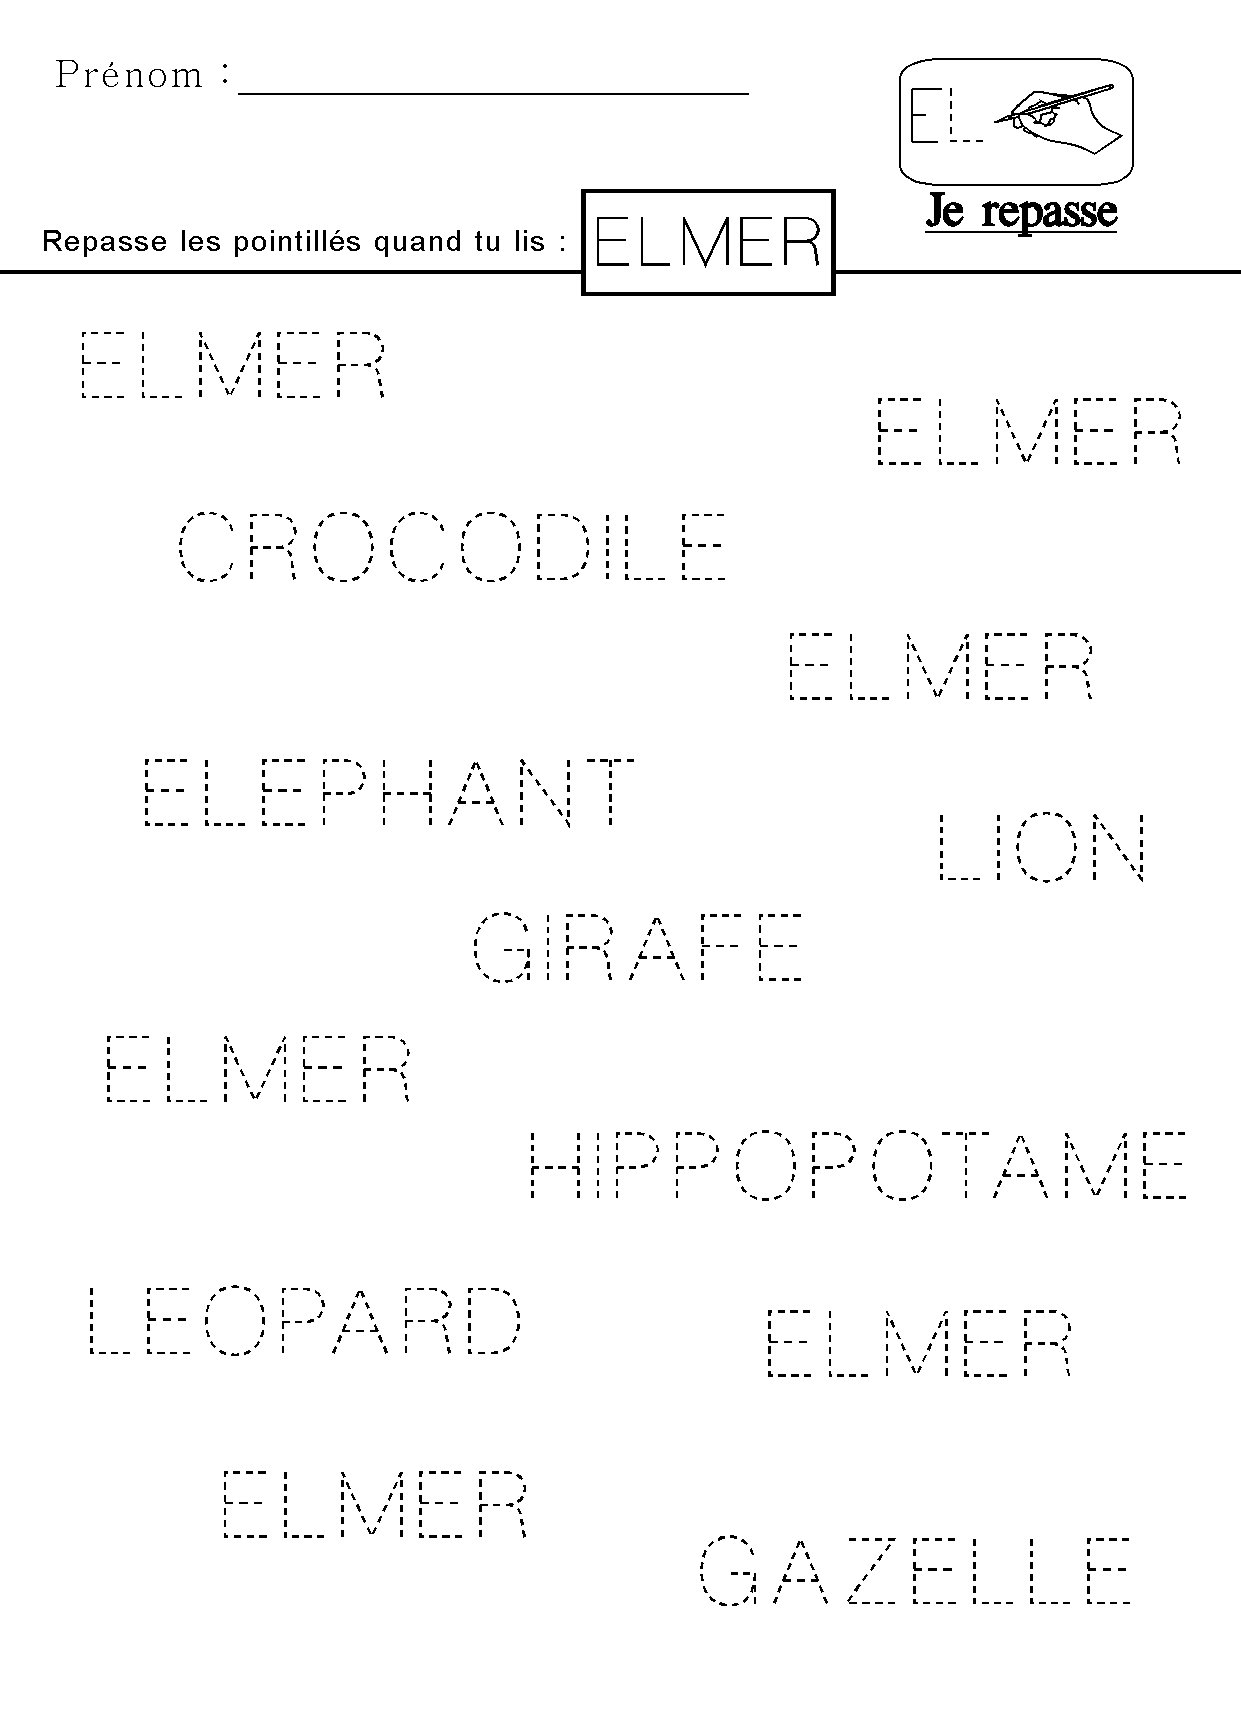 Ecrire en lettres capitales le mot Elmer